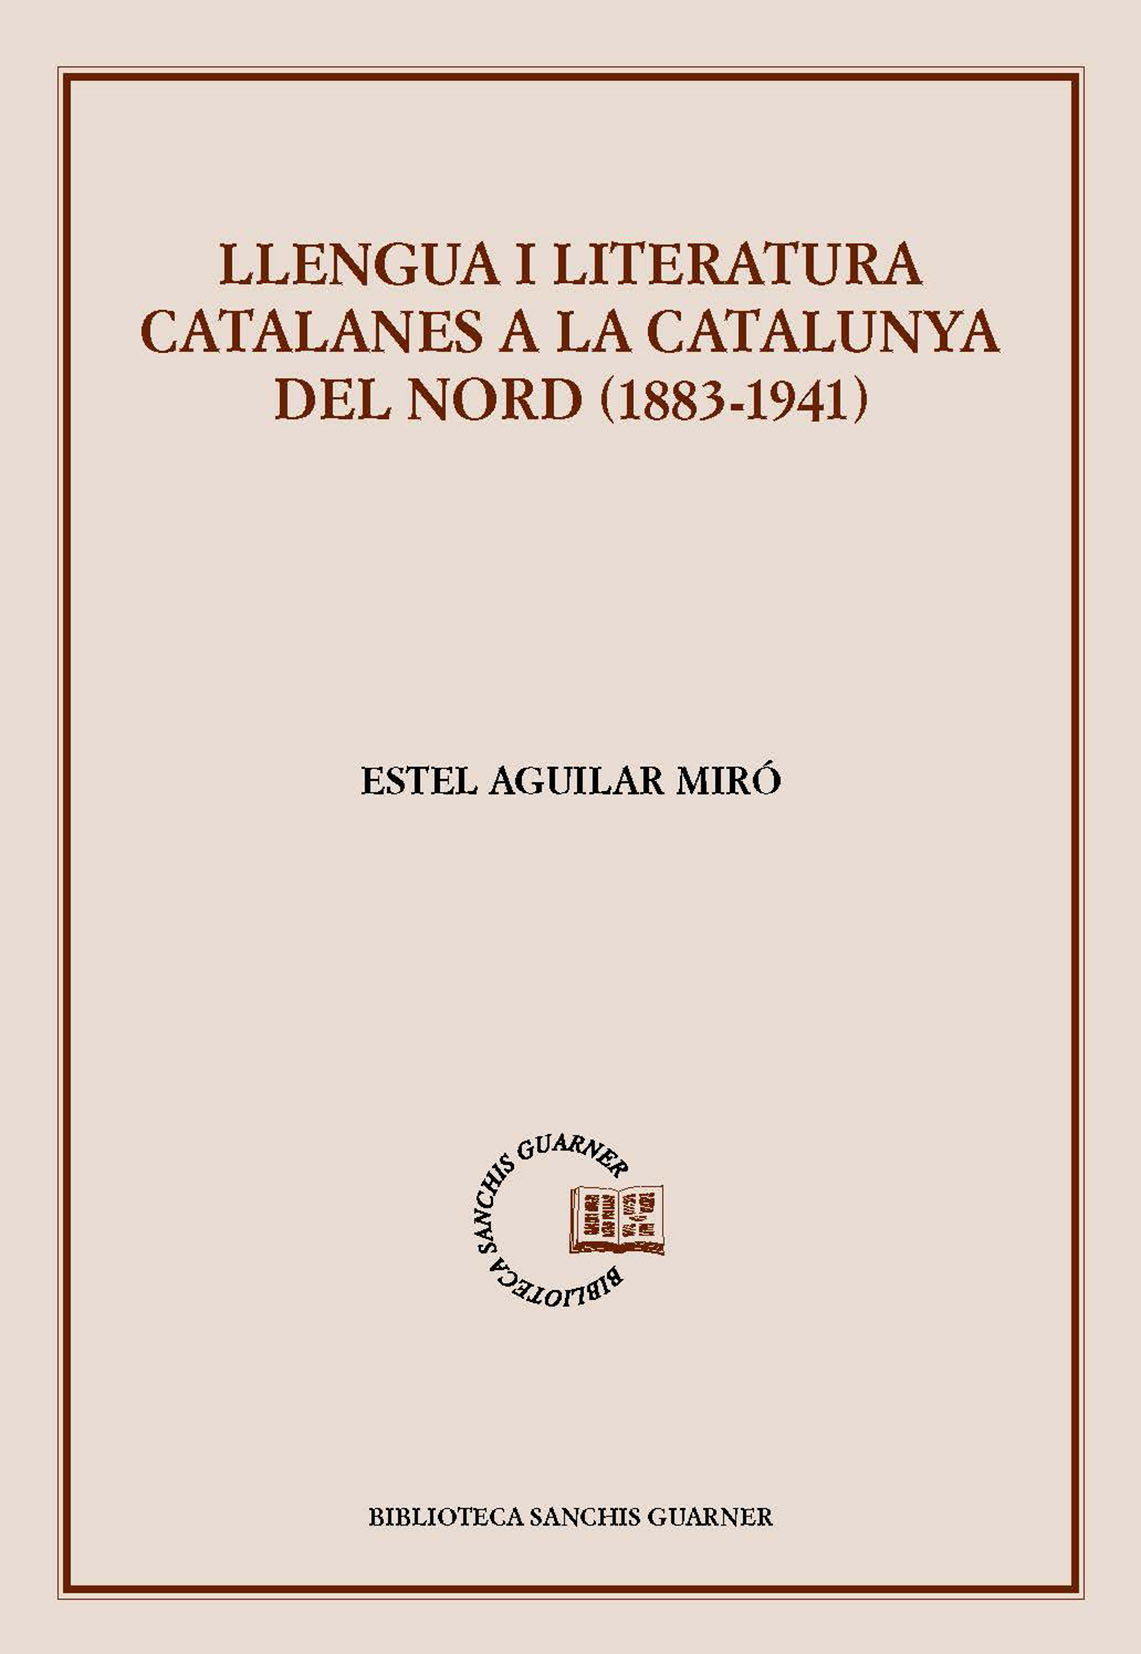 Imagen de portada del libro Llengua i literatura catalanes a la Catalunya Nord (1883-1941)